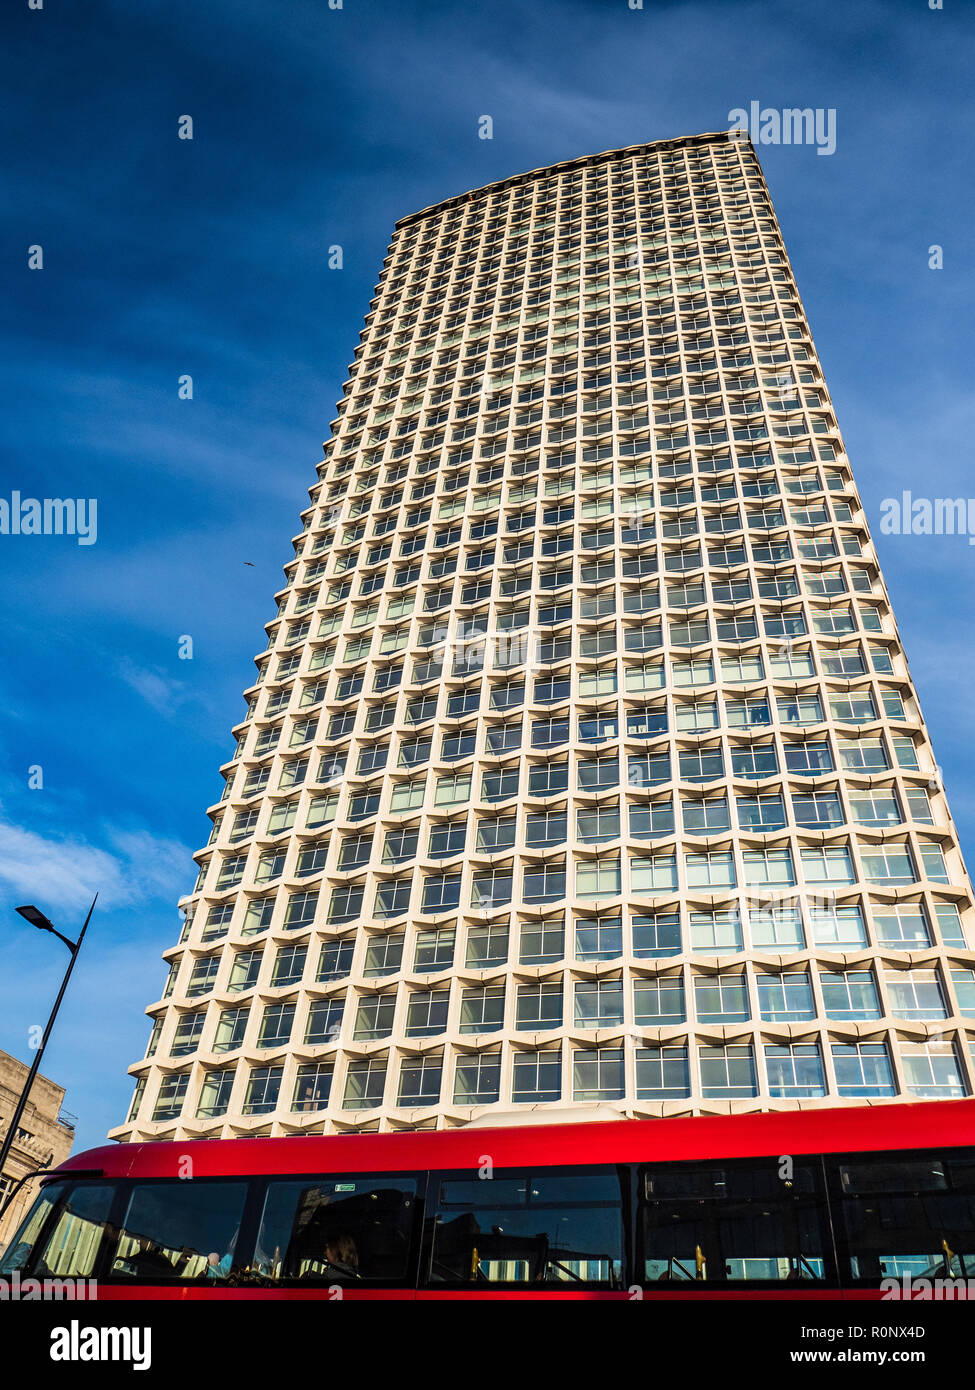 Centre point London - immeuble de 33 étages situé dans le centre de Londres, terminé en 1966 l'architecte George Marsh de R. Seifert et ses partenaires. Catégorie II répertoriée. Banque D'Images